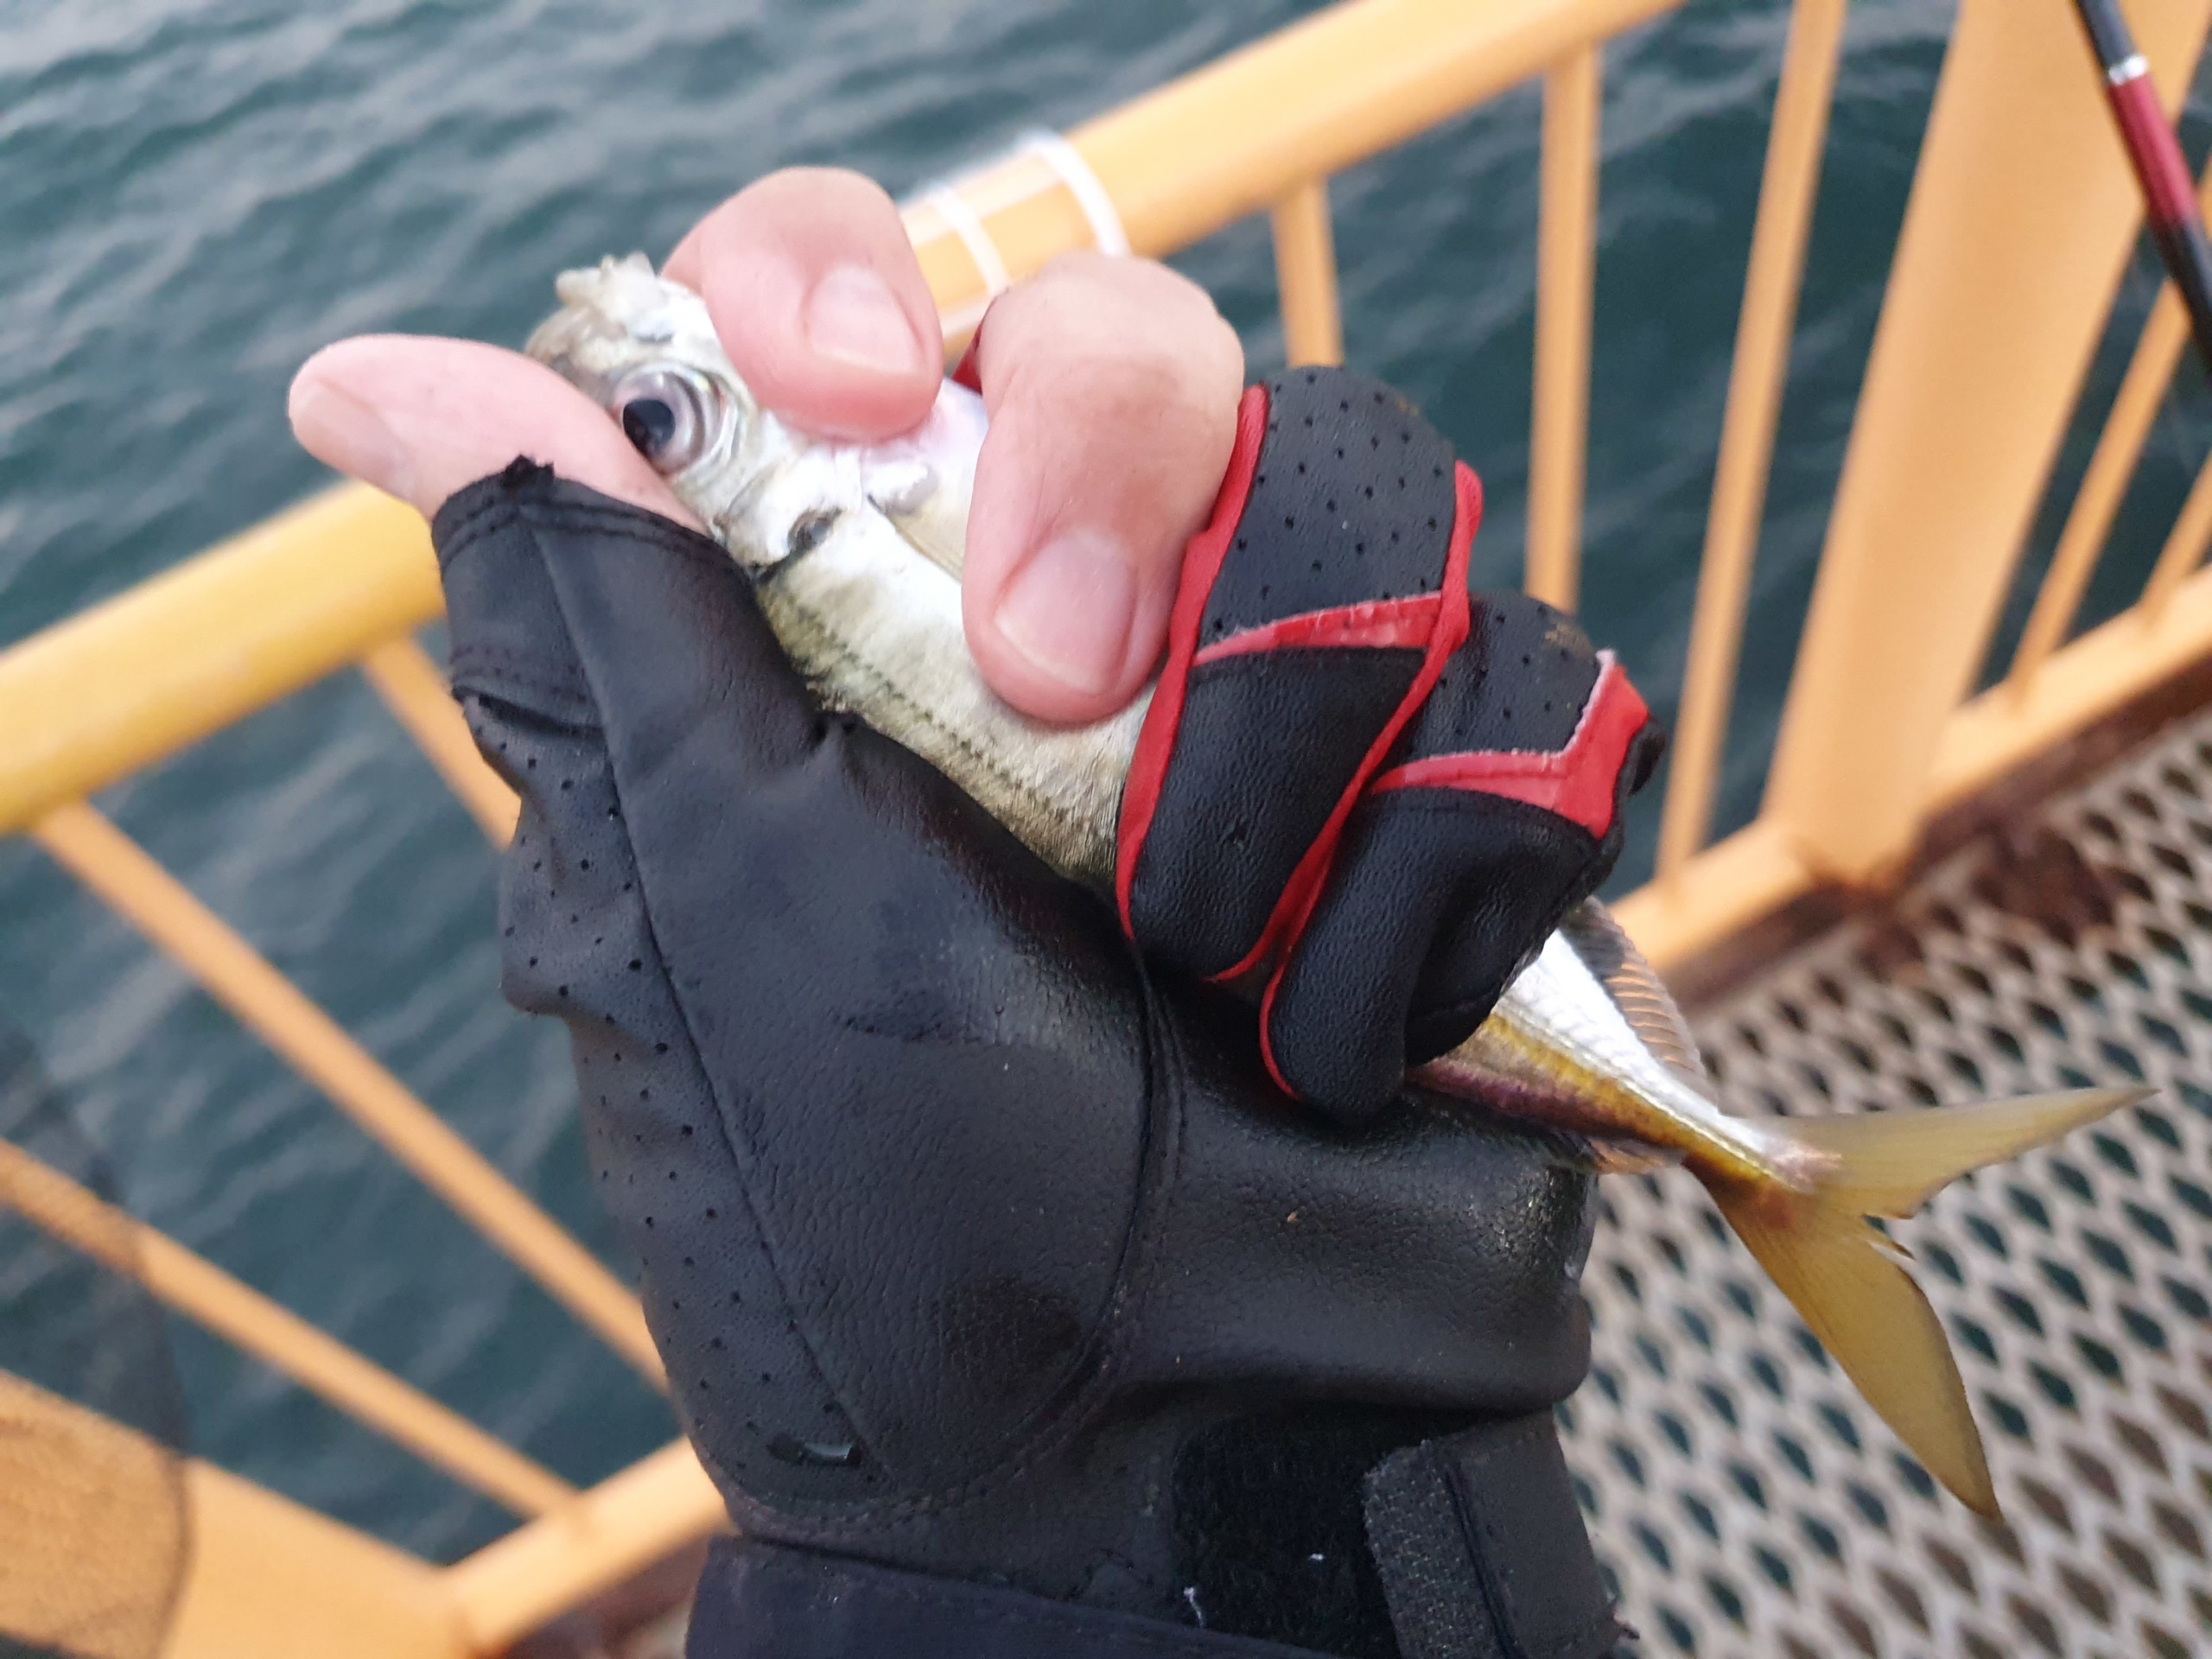 メジナの数釣りを楽しめるウキフカセ釣り 最後には良型も！ 神奈川